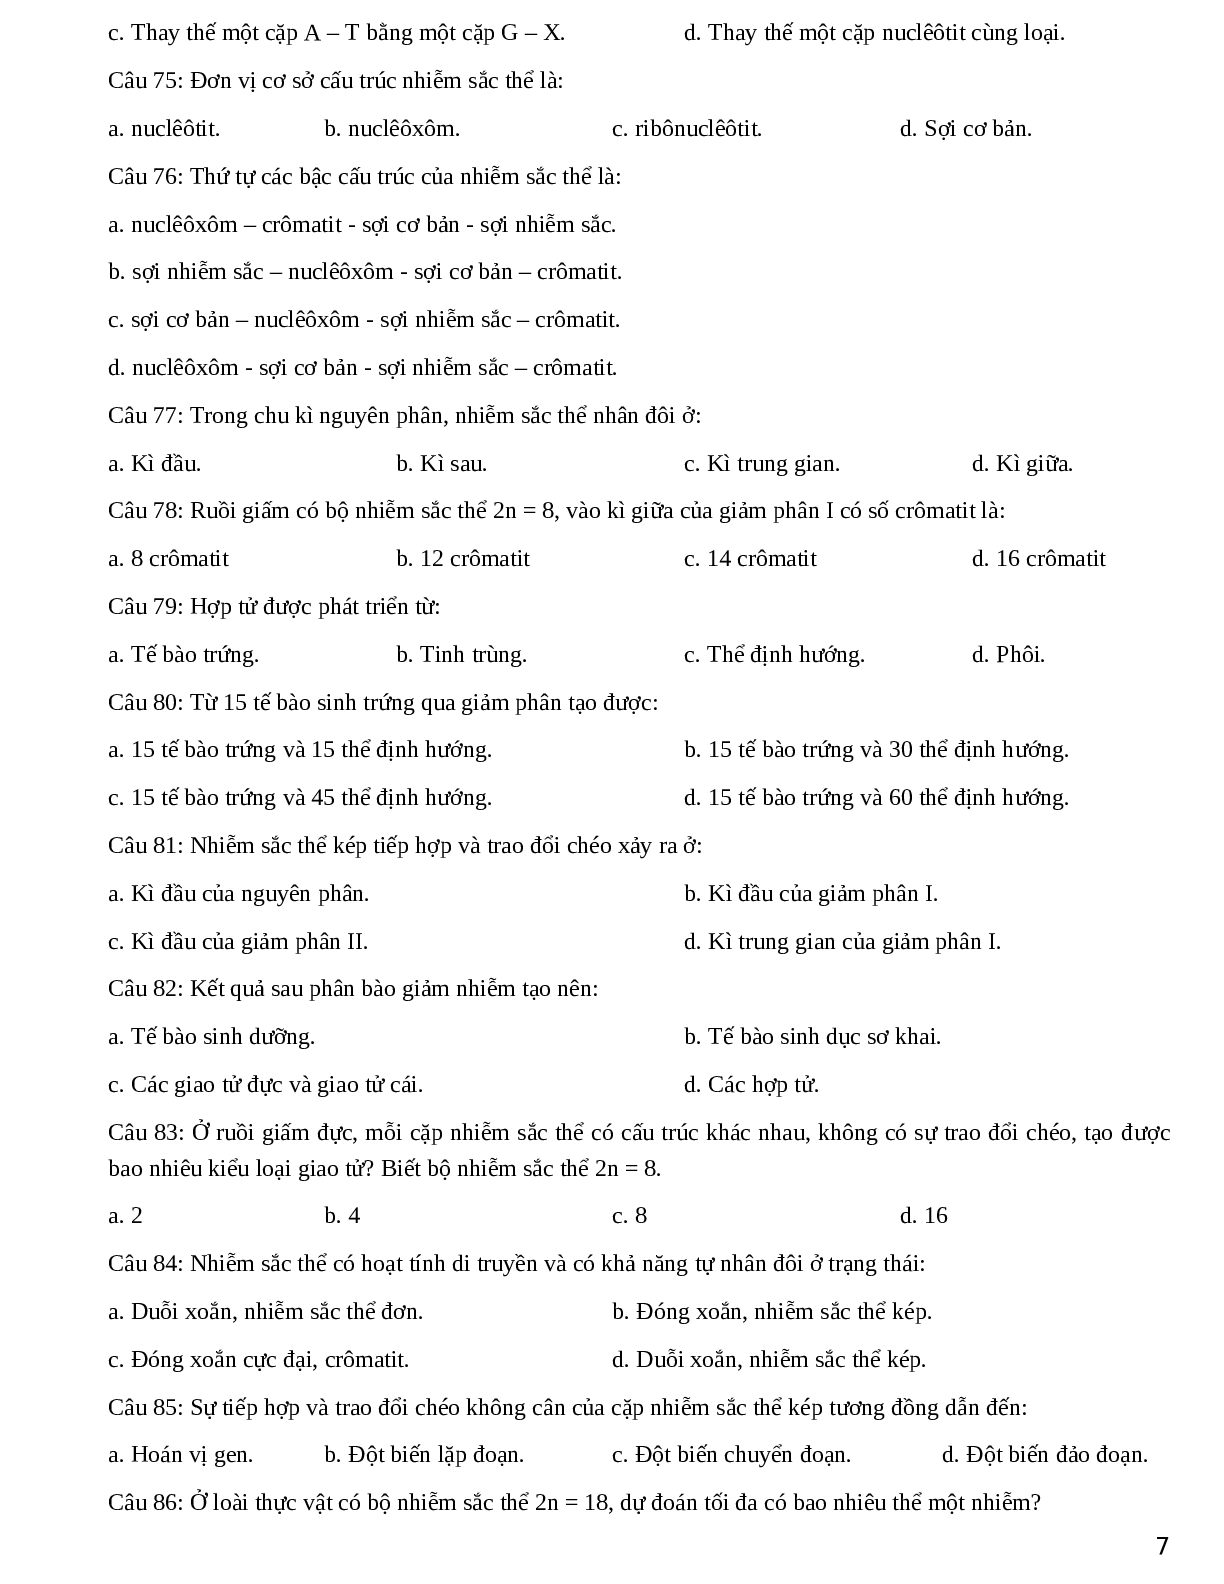 Đề cương ôn thi THPT QG phần 1 chương 1 - Sinh Học lớp 12 (trang 7)